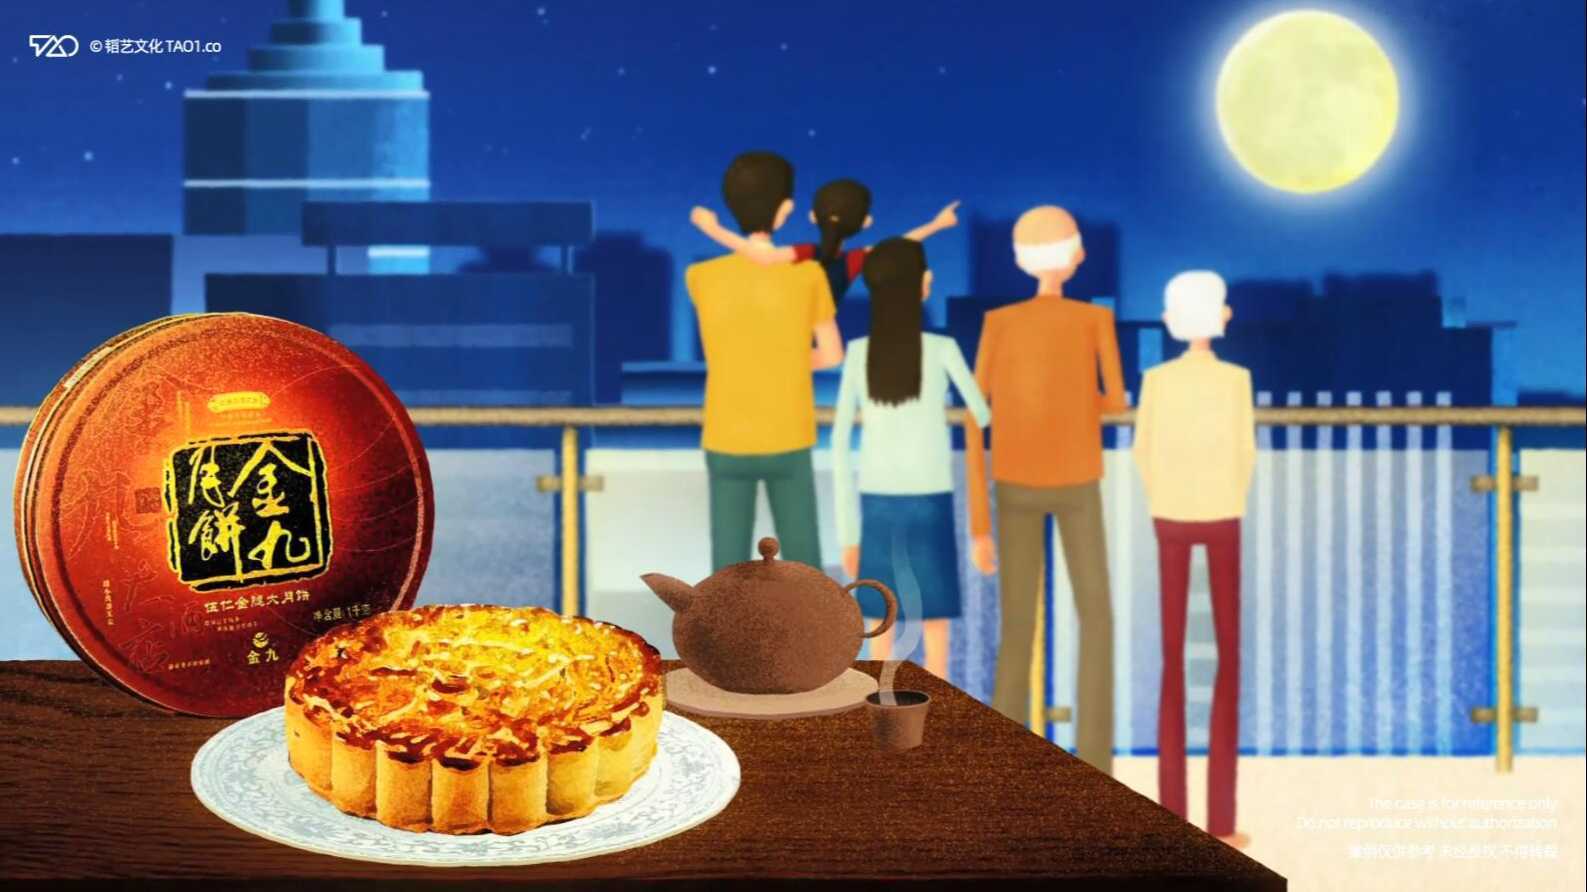 [原创动画制作] 金九月饼 产品宣传广告